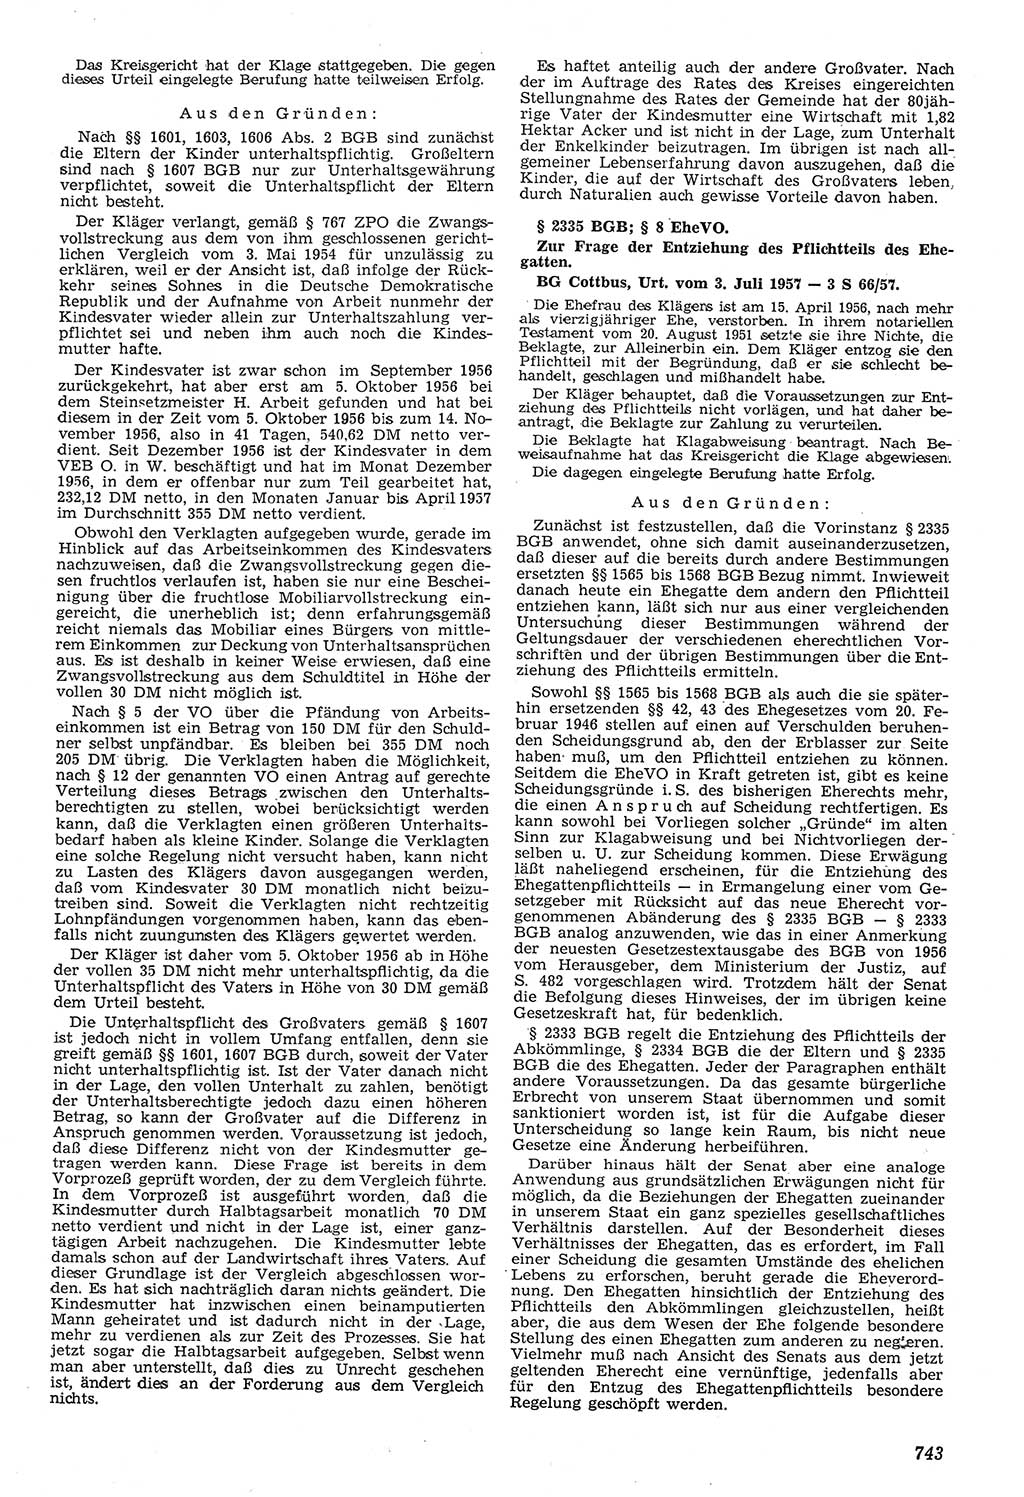 Neue Justiz (NJ), Zeitschrift für Recht und Rechtswissenschaft [Deutsche Demokratische Republik (DDR)], 11. Jahrgang 1957, Seite 743 (NJ DDR 1957, S. 743)